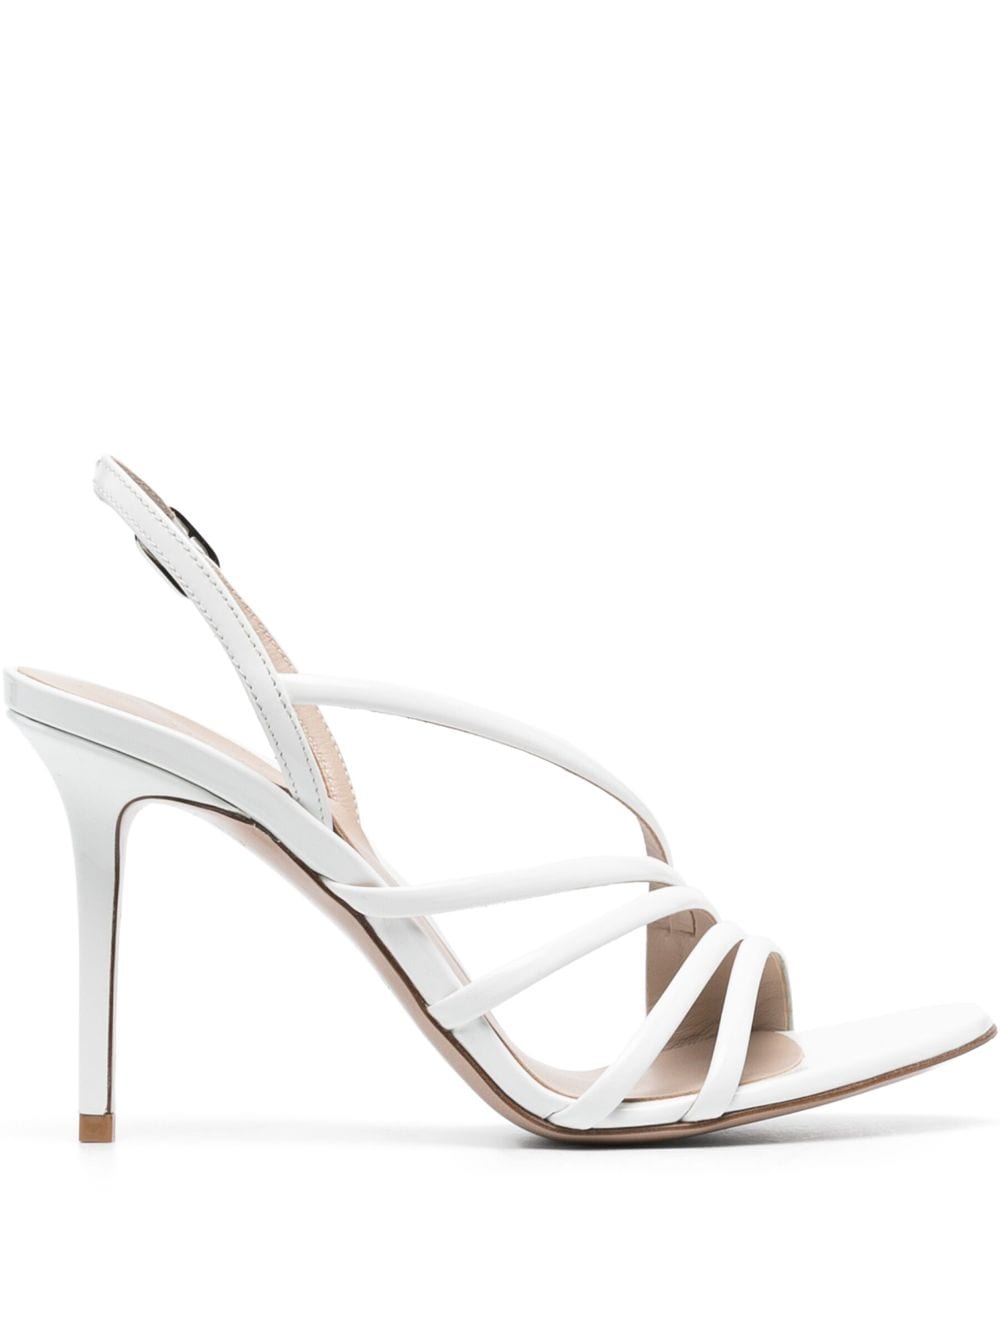 Le Silla Scarlet 105mm leather sandals - White von Le Silla